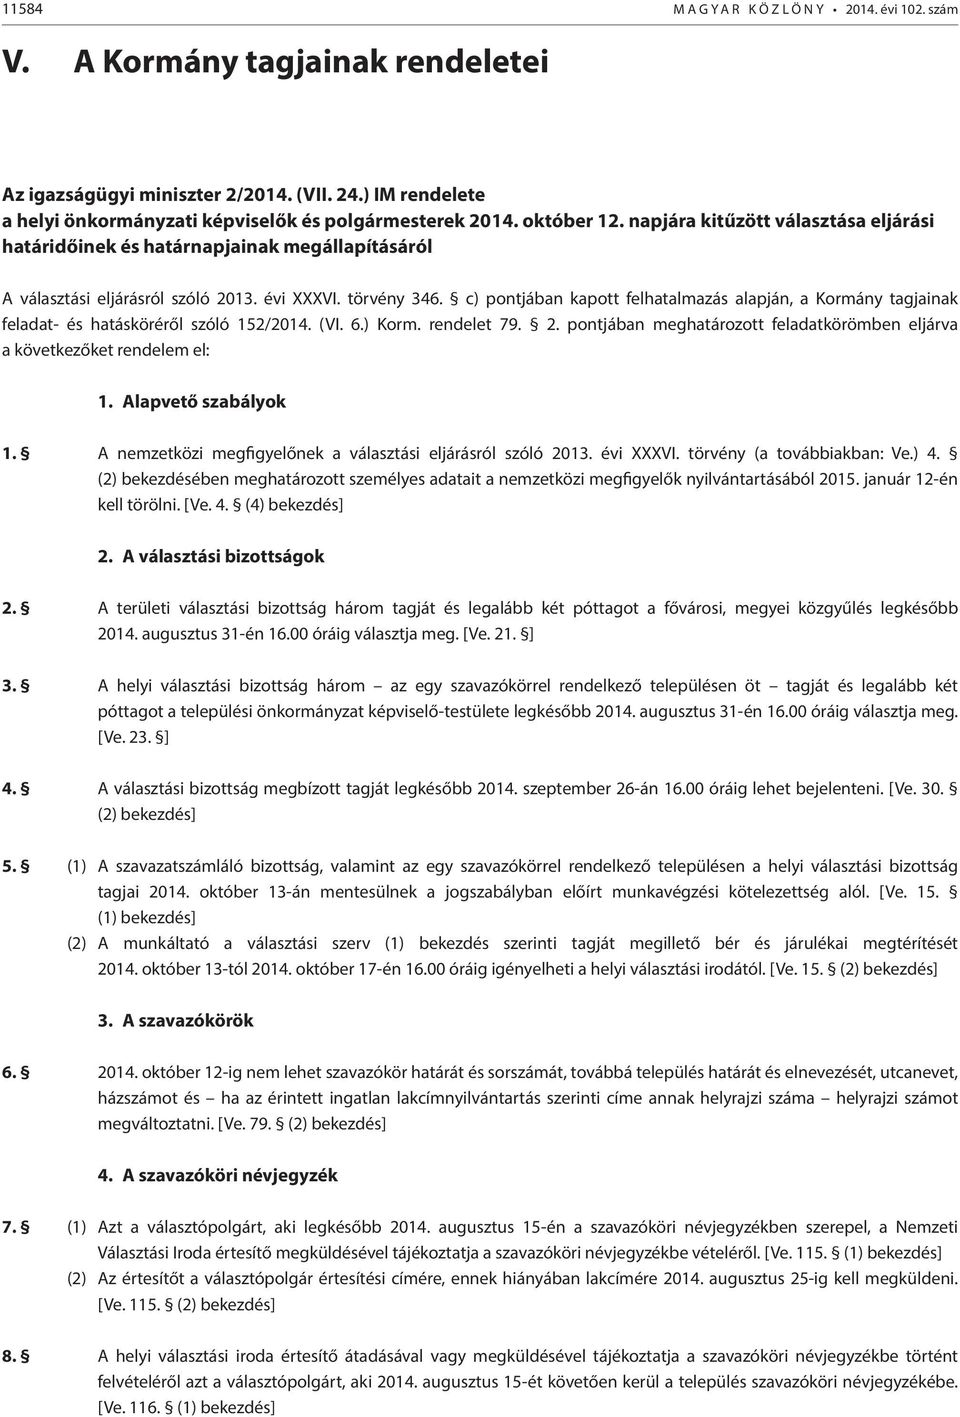 c) pontjában kapott felhatalmazás alapján, a Kormány tagjainak feladat- és hatásköréről szóló 152/2014. (VI. 6.) Korm. rendelet 79. 2.